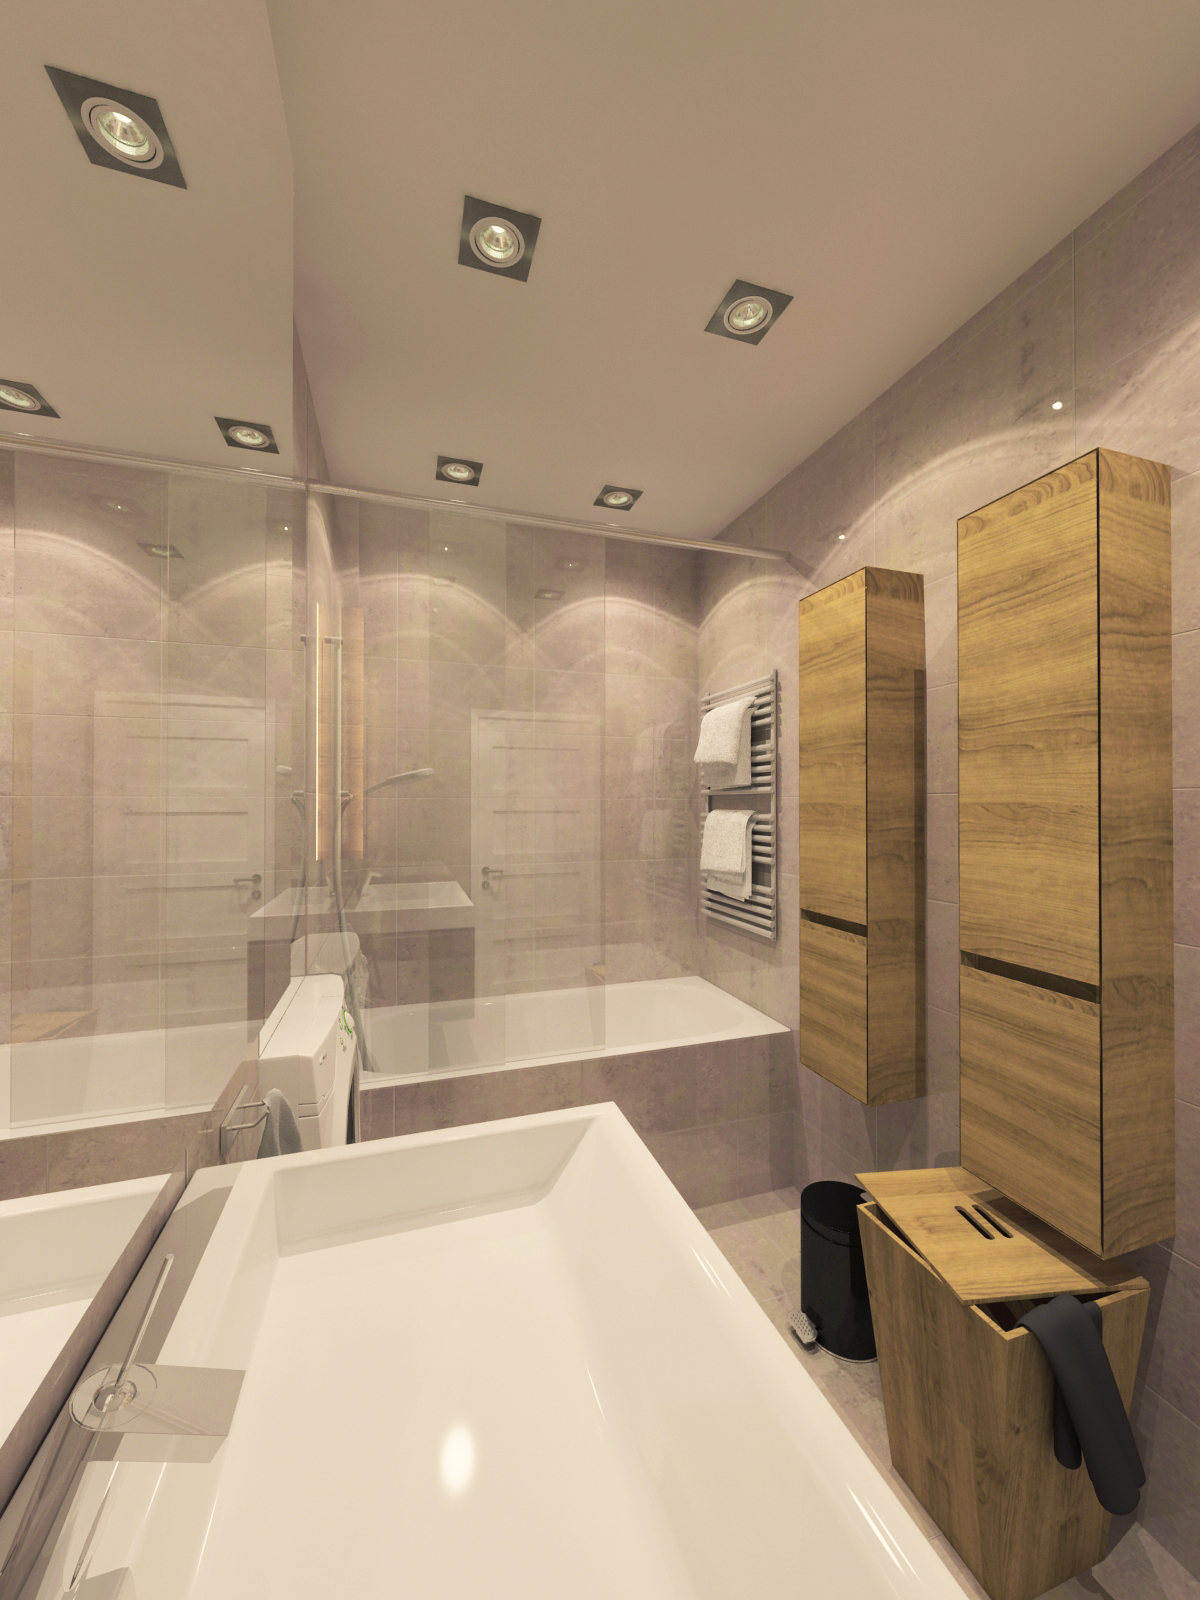 Látványterv Fürdőszoba / Architectural visualization Bathroom